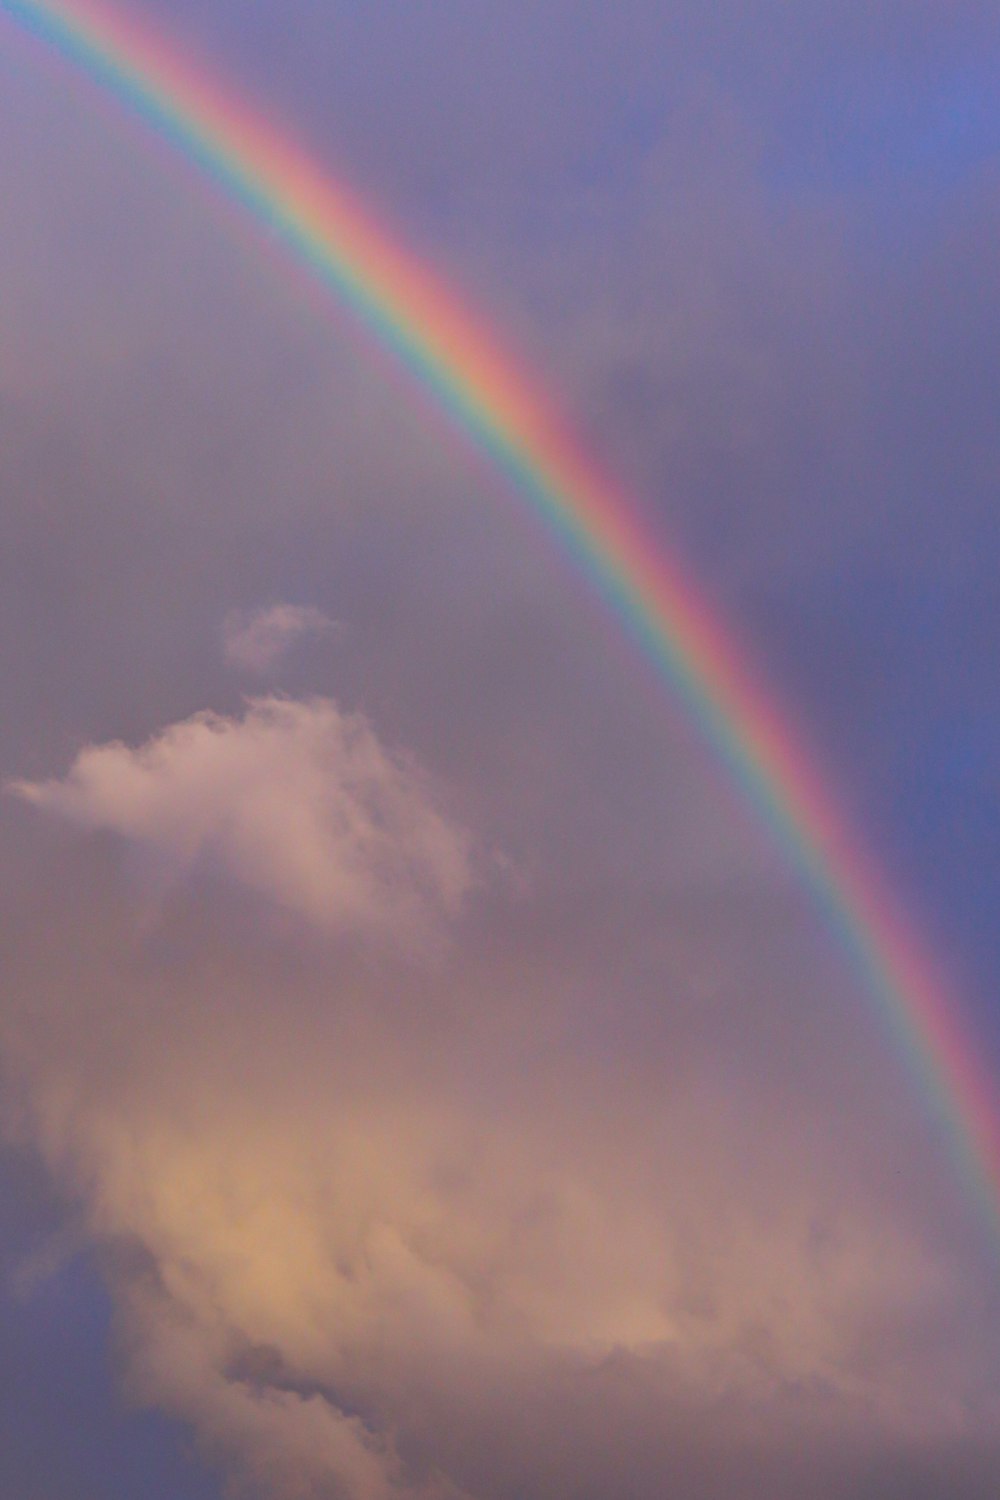 a double rainbow in a cloudy sky